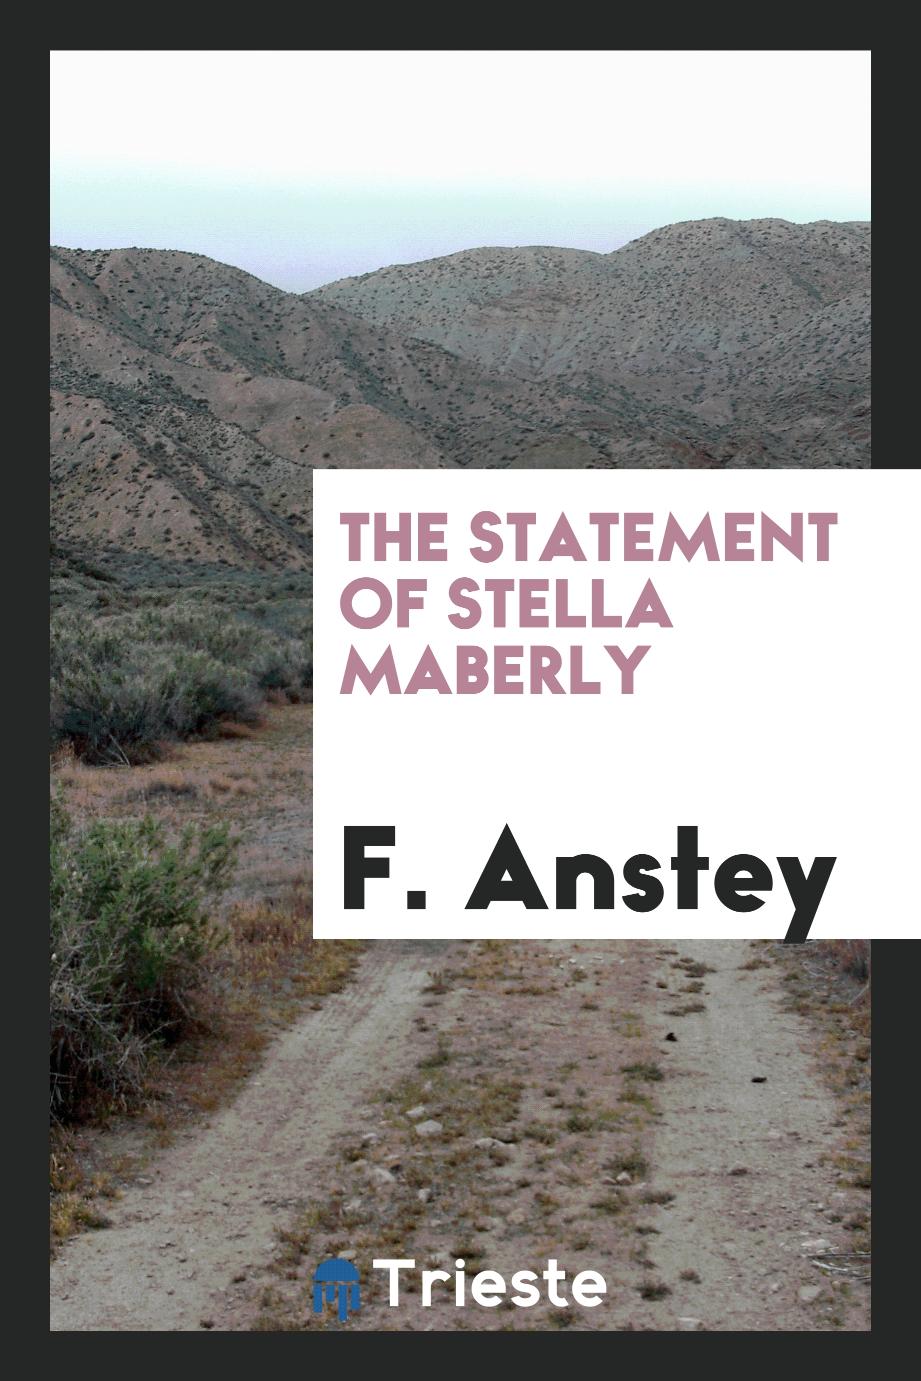 The statement of Stella Maberly